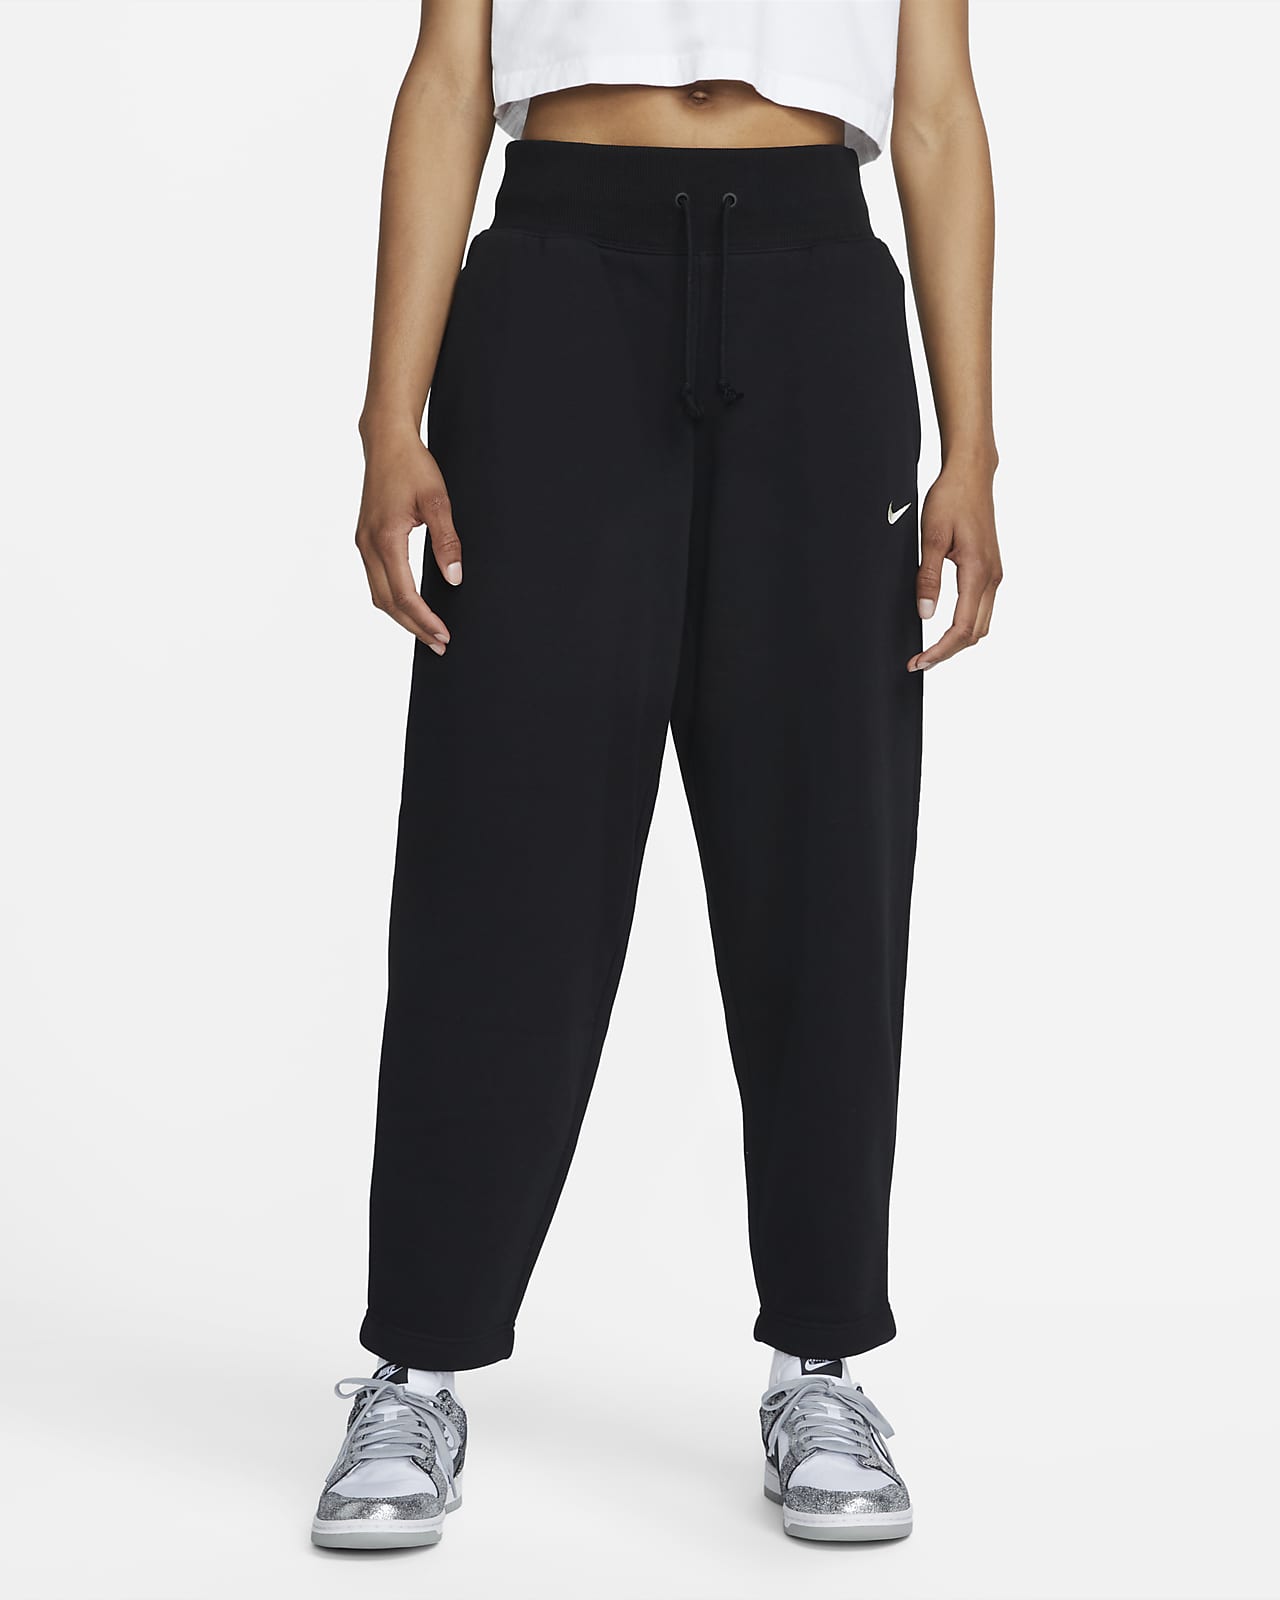 Nike Sportswear Phoenix Fleece Jogger de talle alto curvo de 7/8 - Mujer